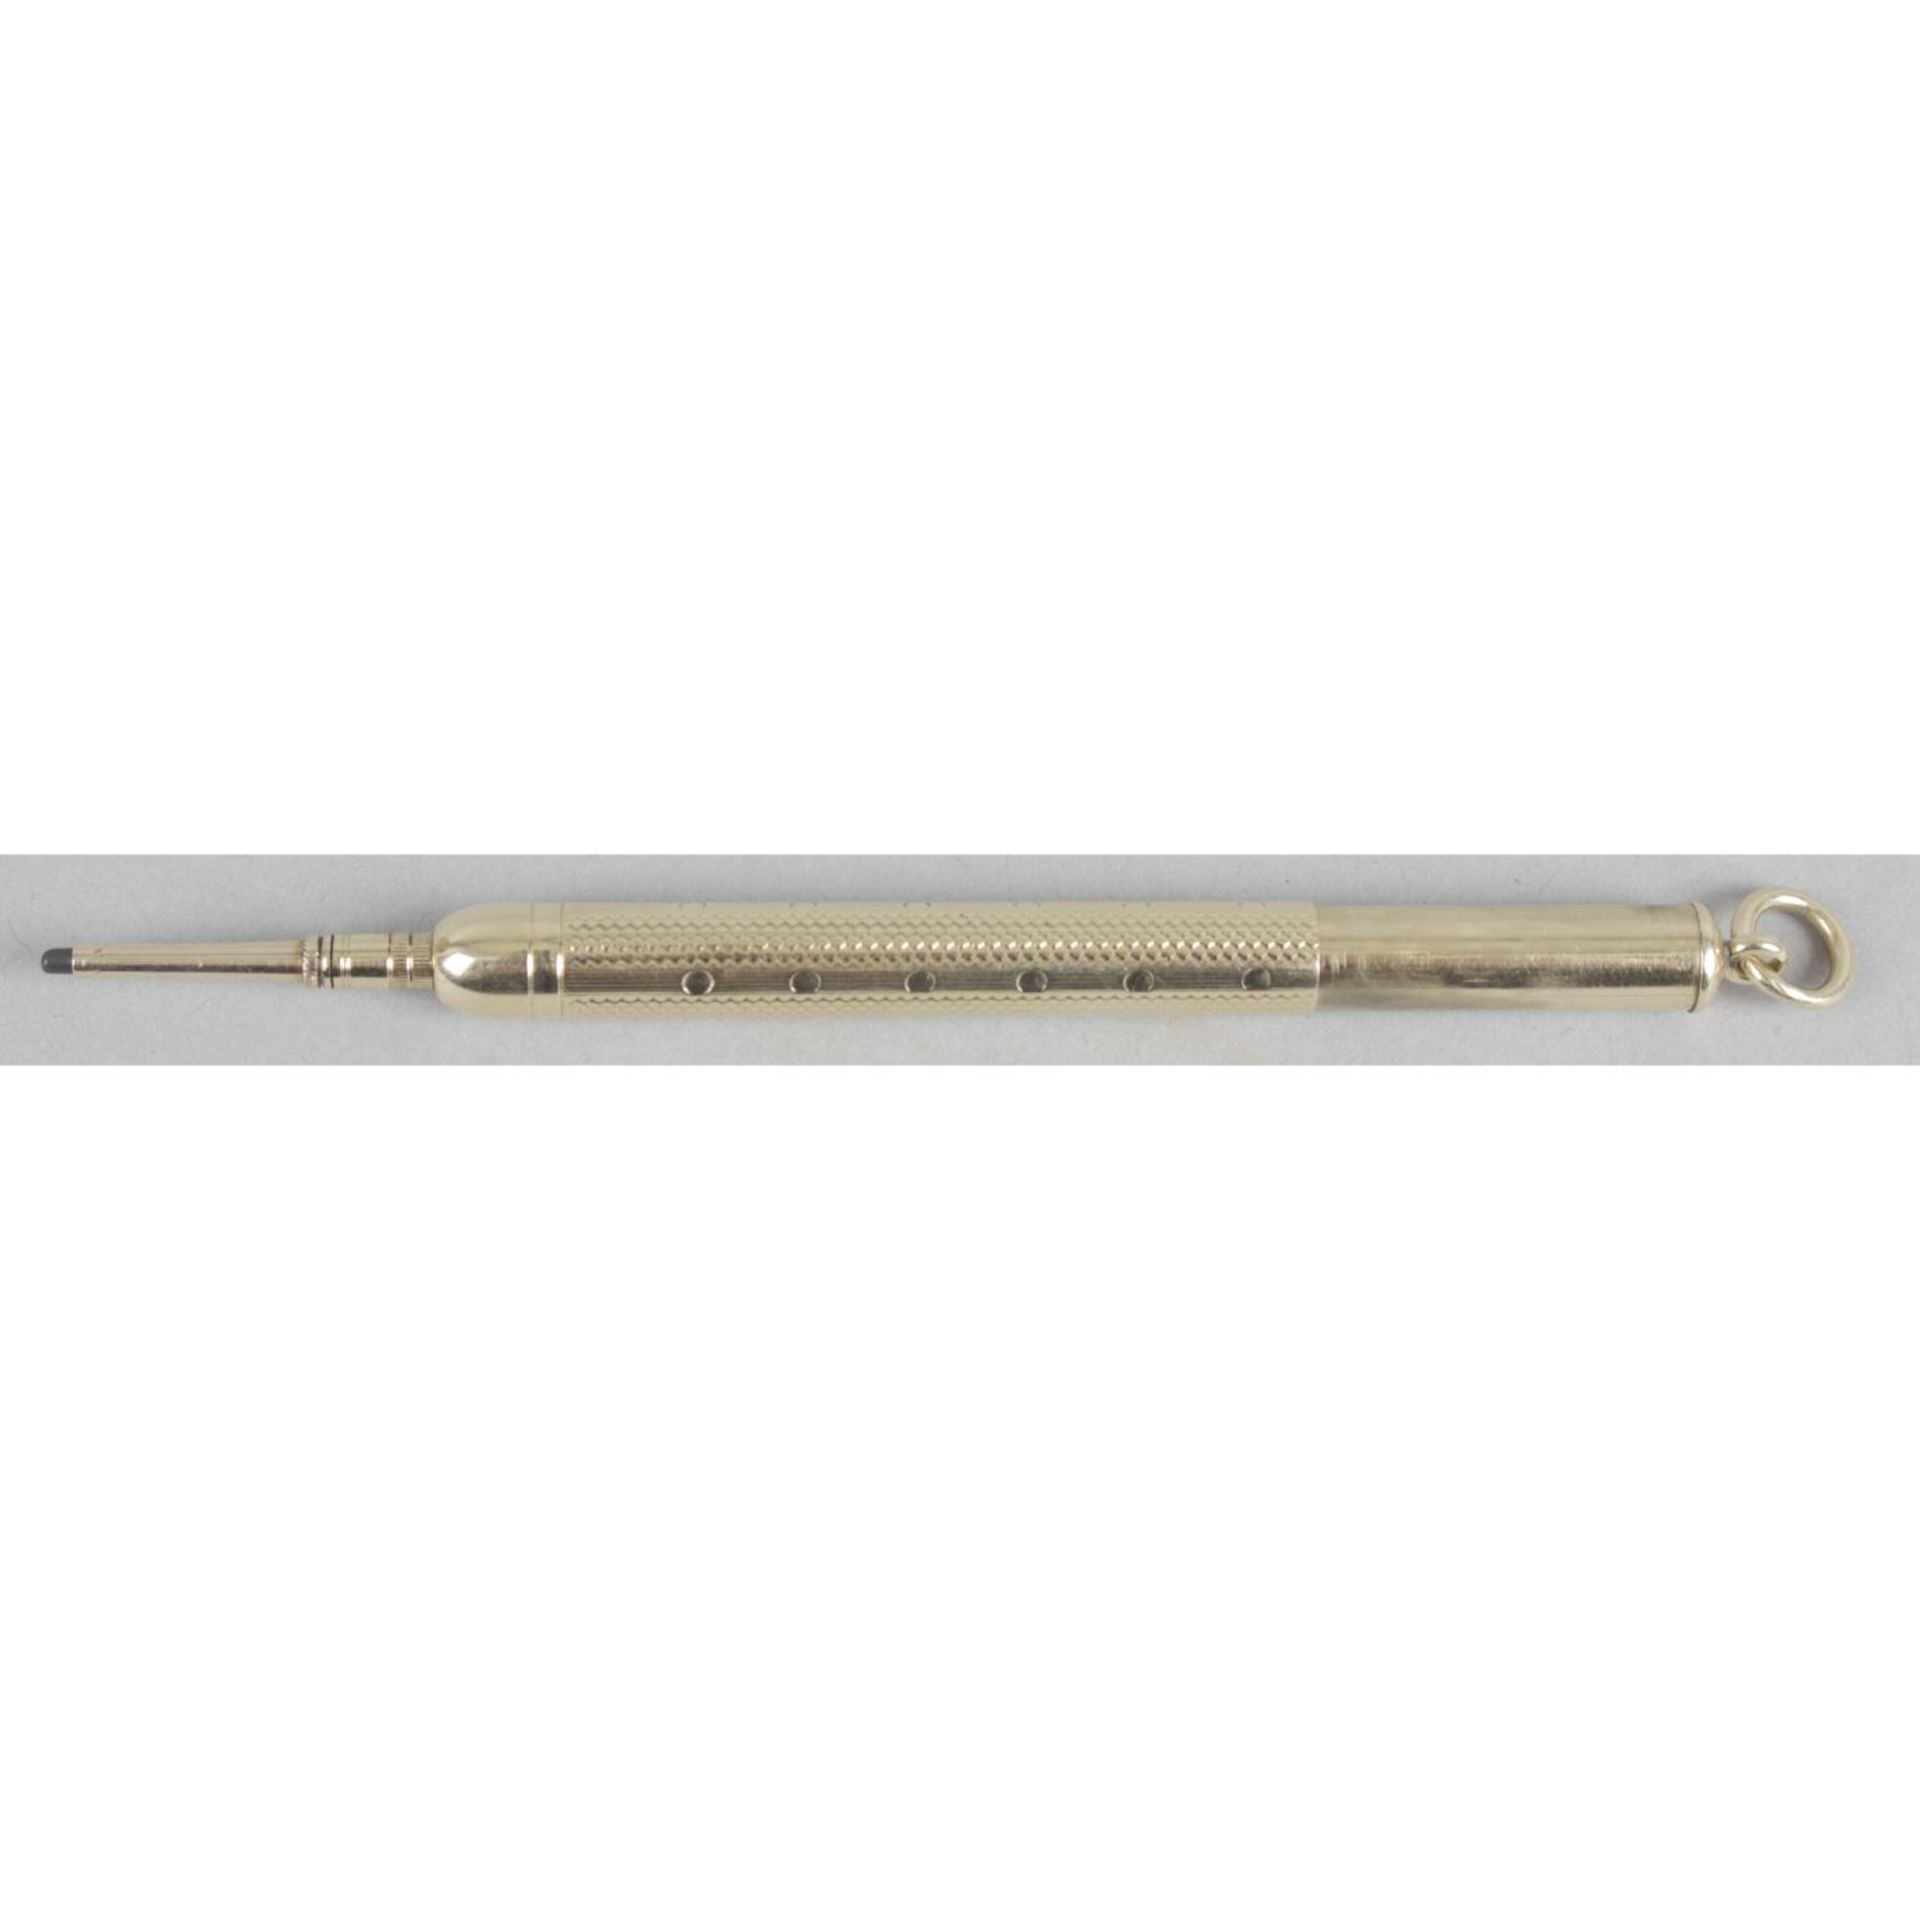 A Sampson Mordan & Co gold telescopic propelling pencil,